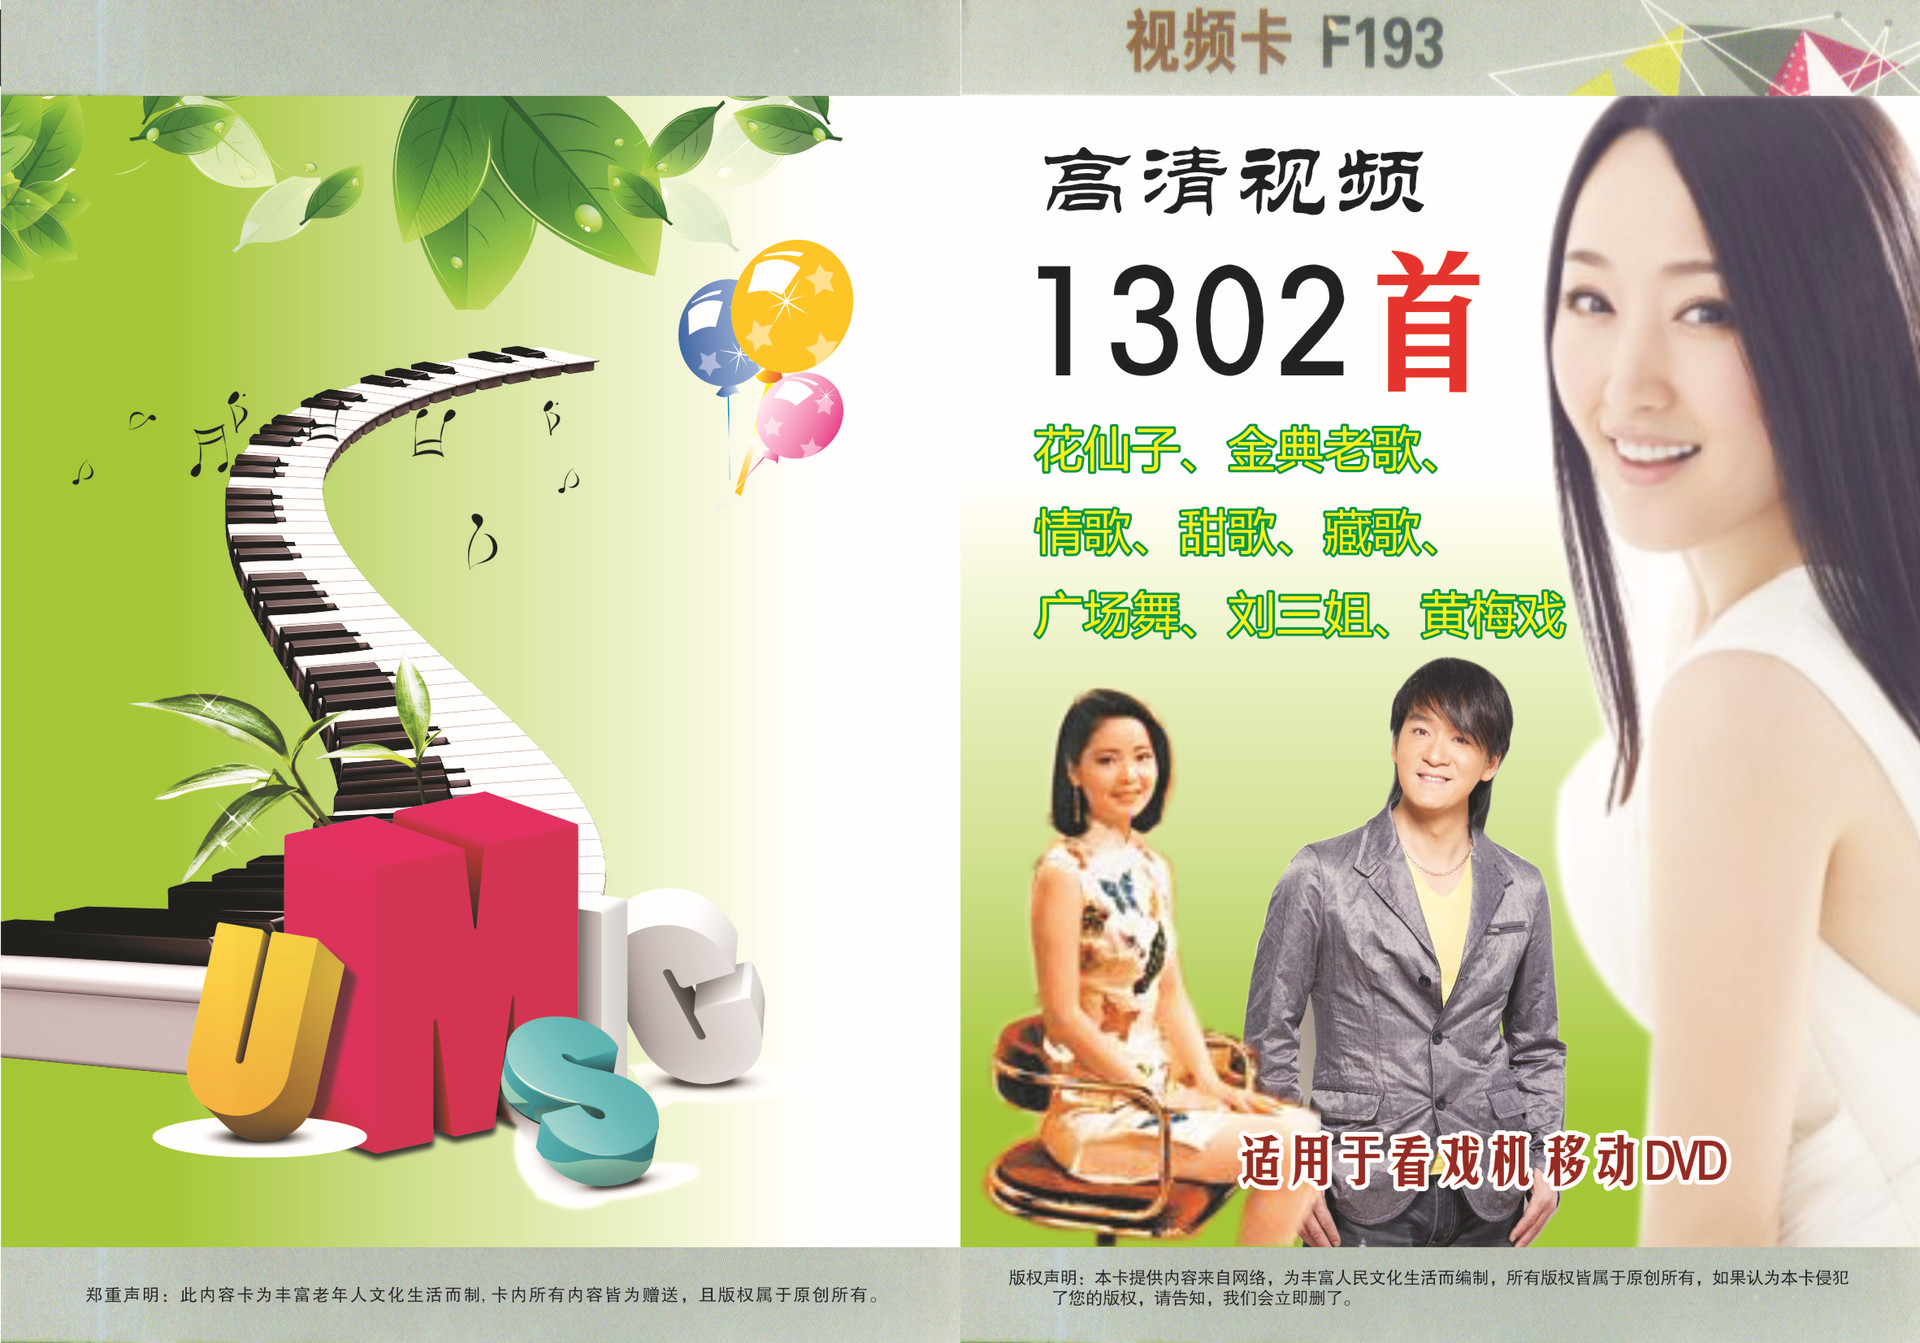 1302首 8G视频卡 F193 DVD通用/戏曲/广场舞/保健操 小苹果视频